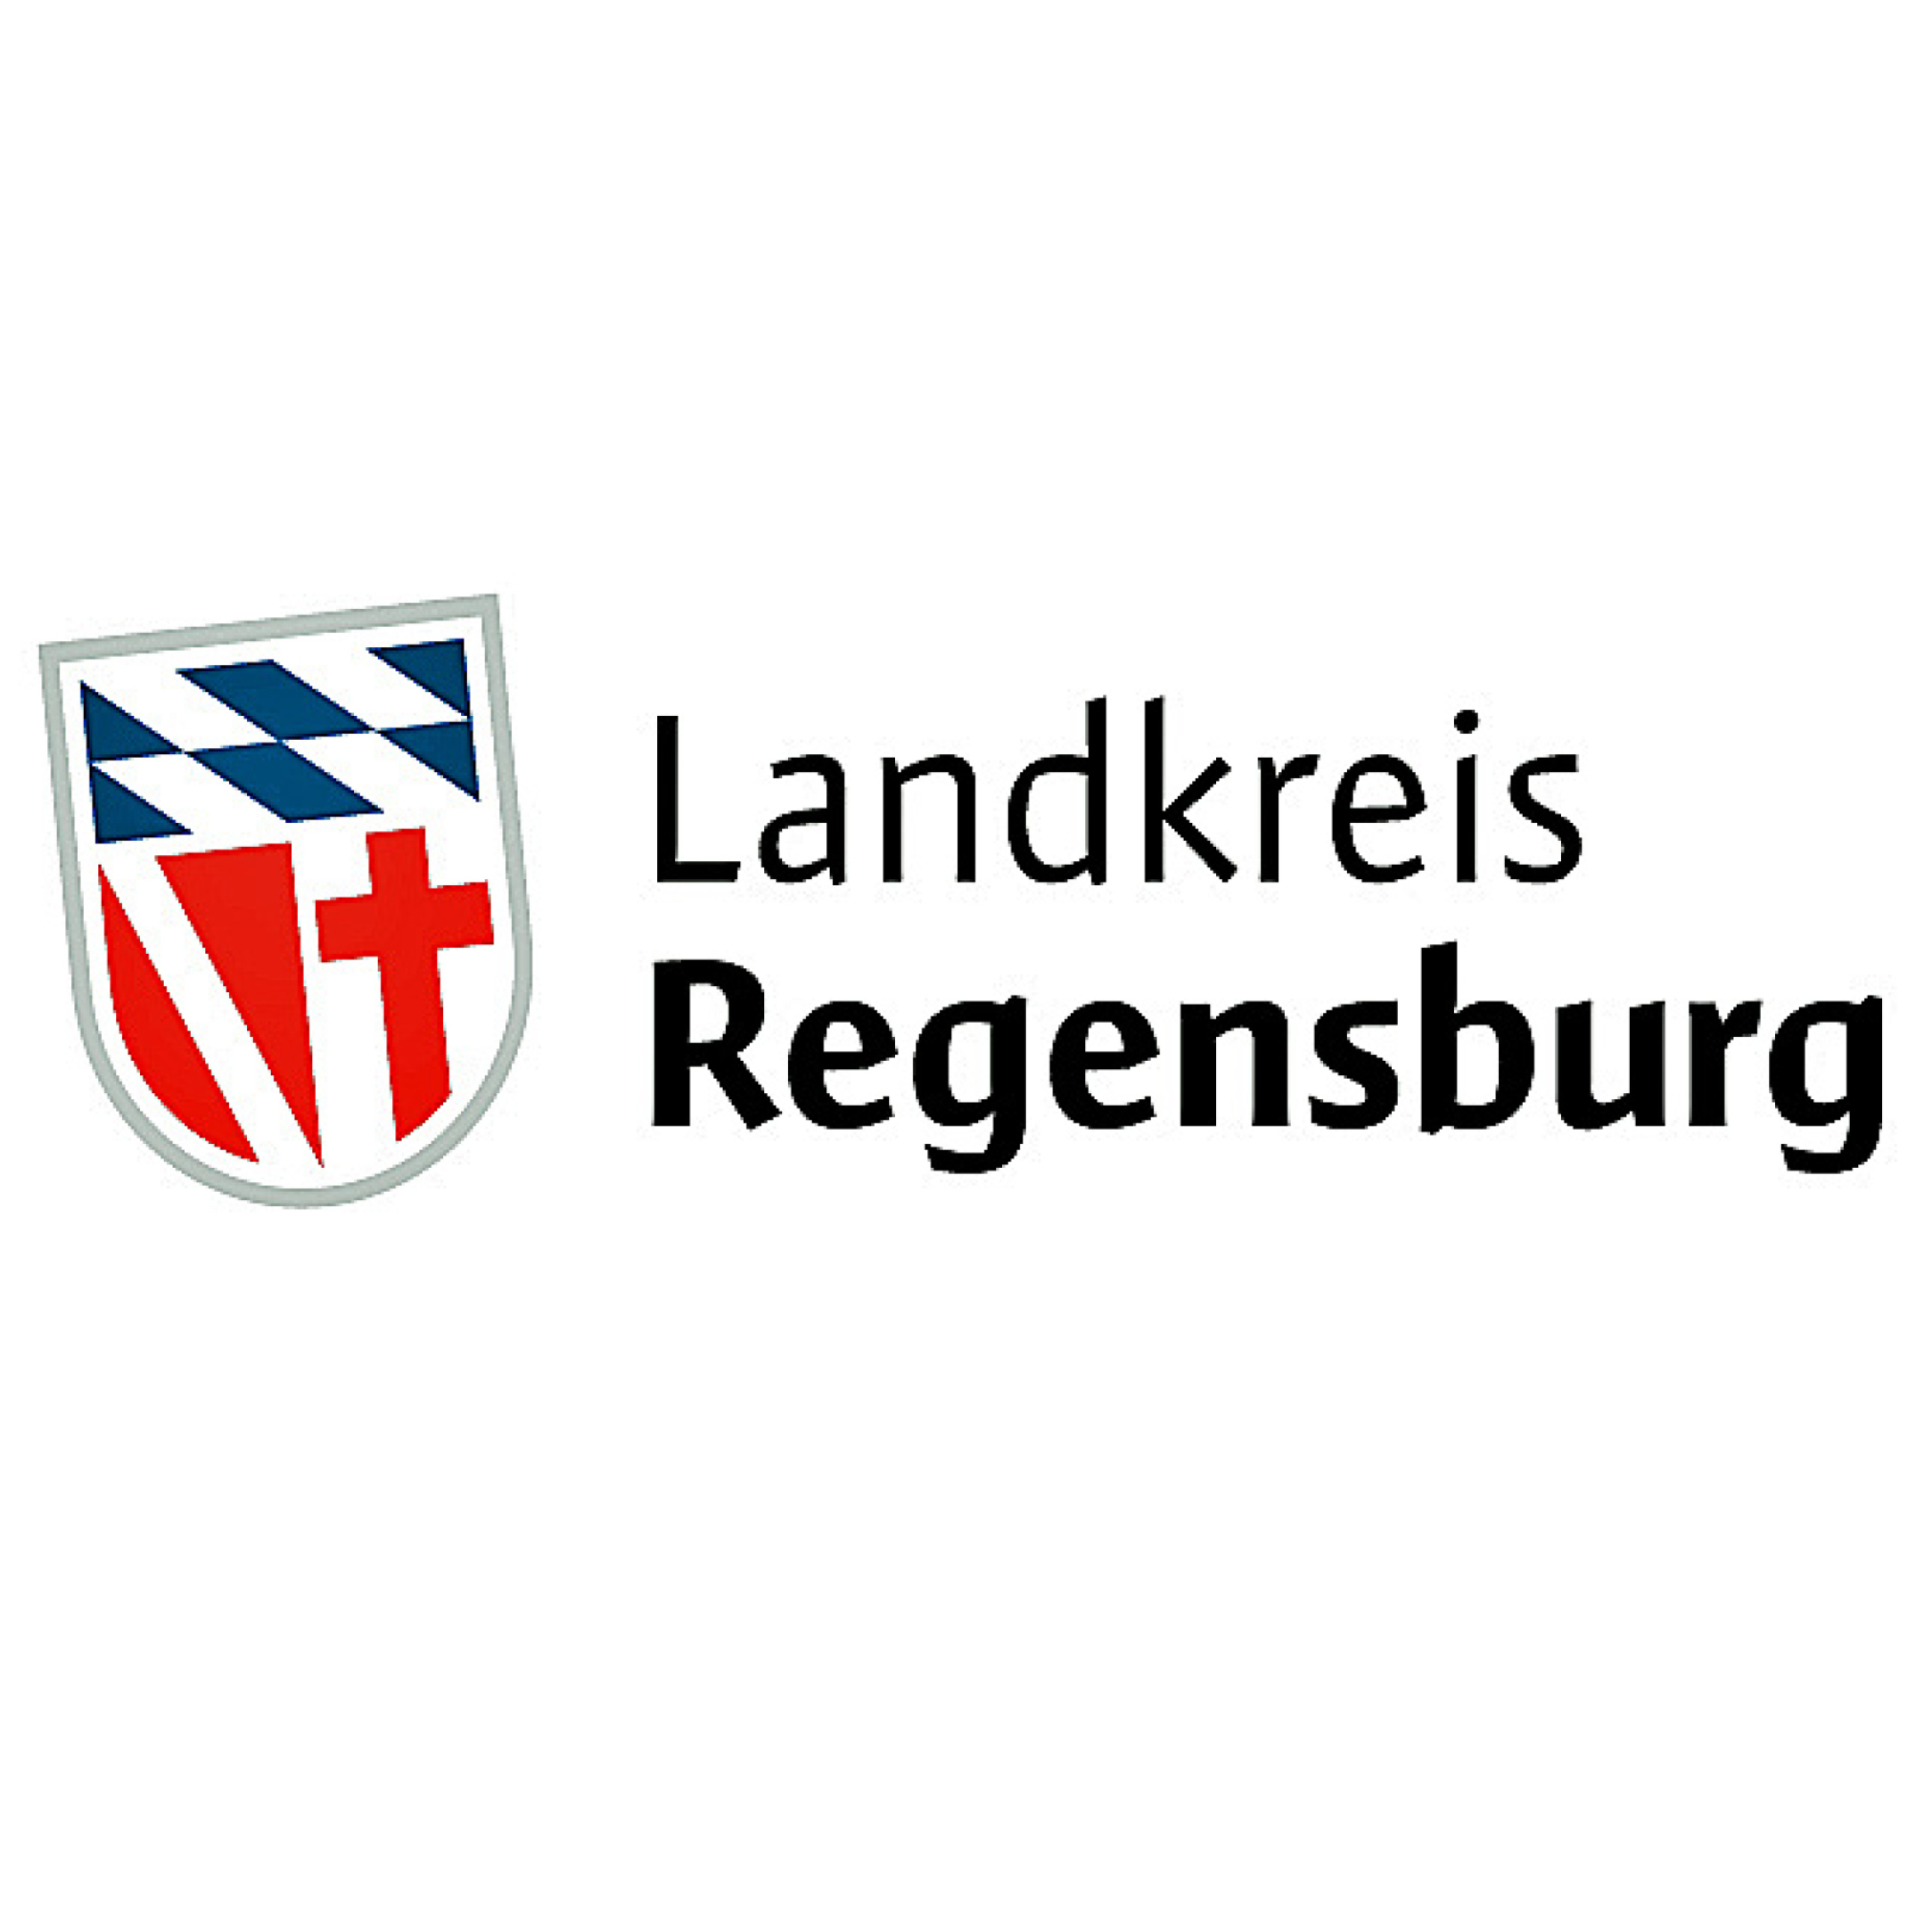 Praxisorientierte Ausbildung zur/m Erzieher/in im Landkreis Regensburg